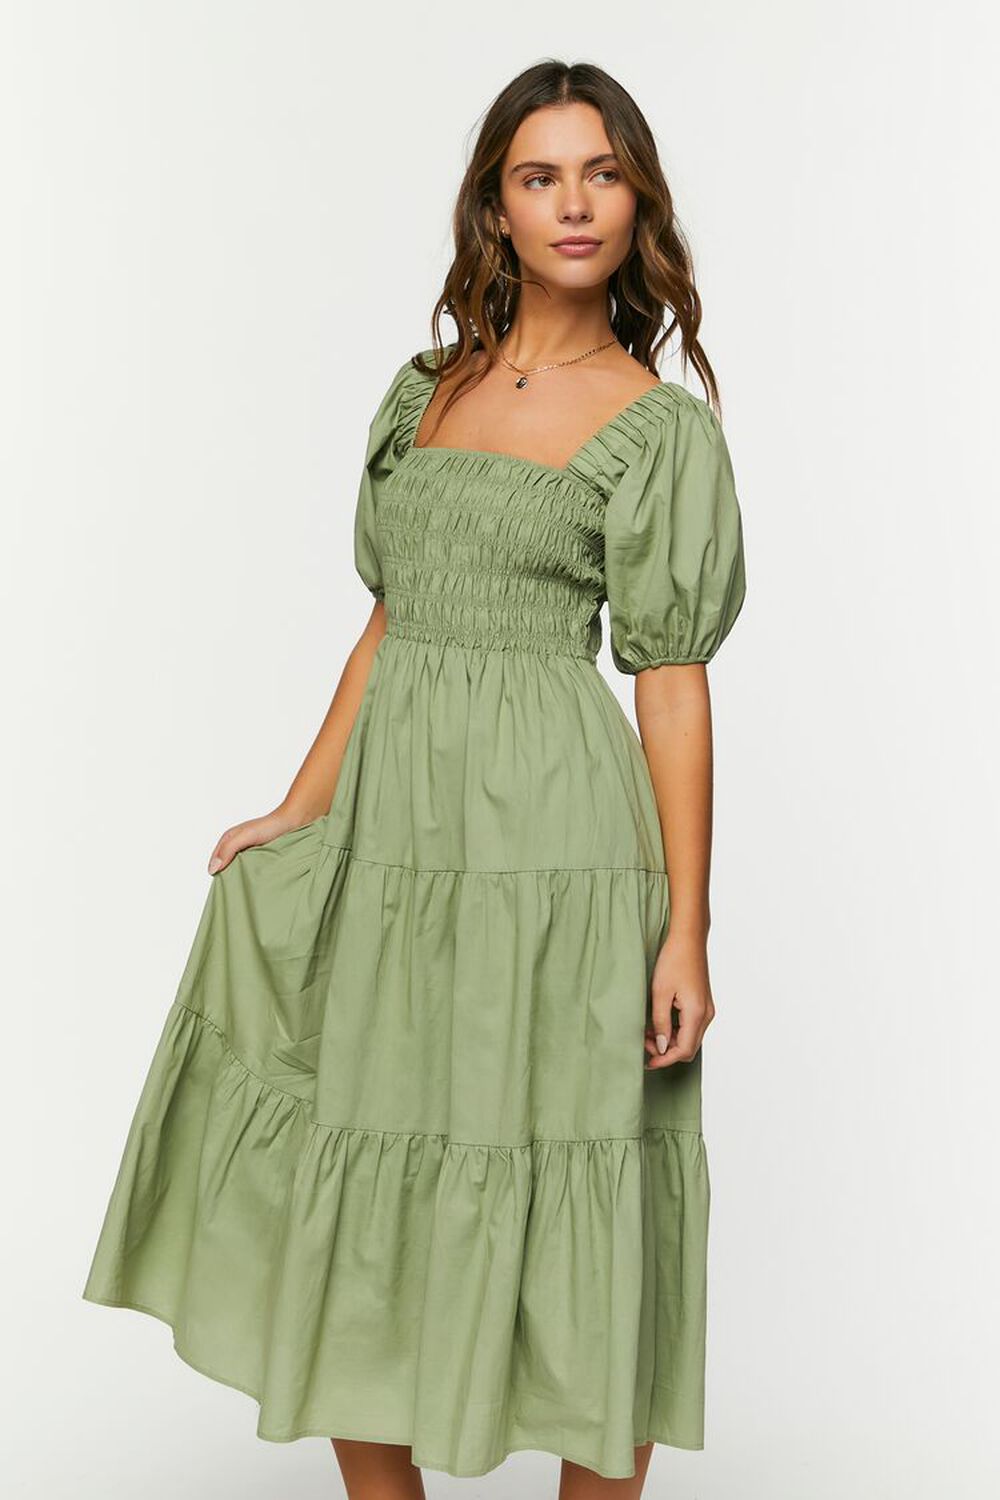 OLIVE Smocked Puff-Sleeve Dress, image 2